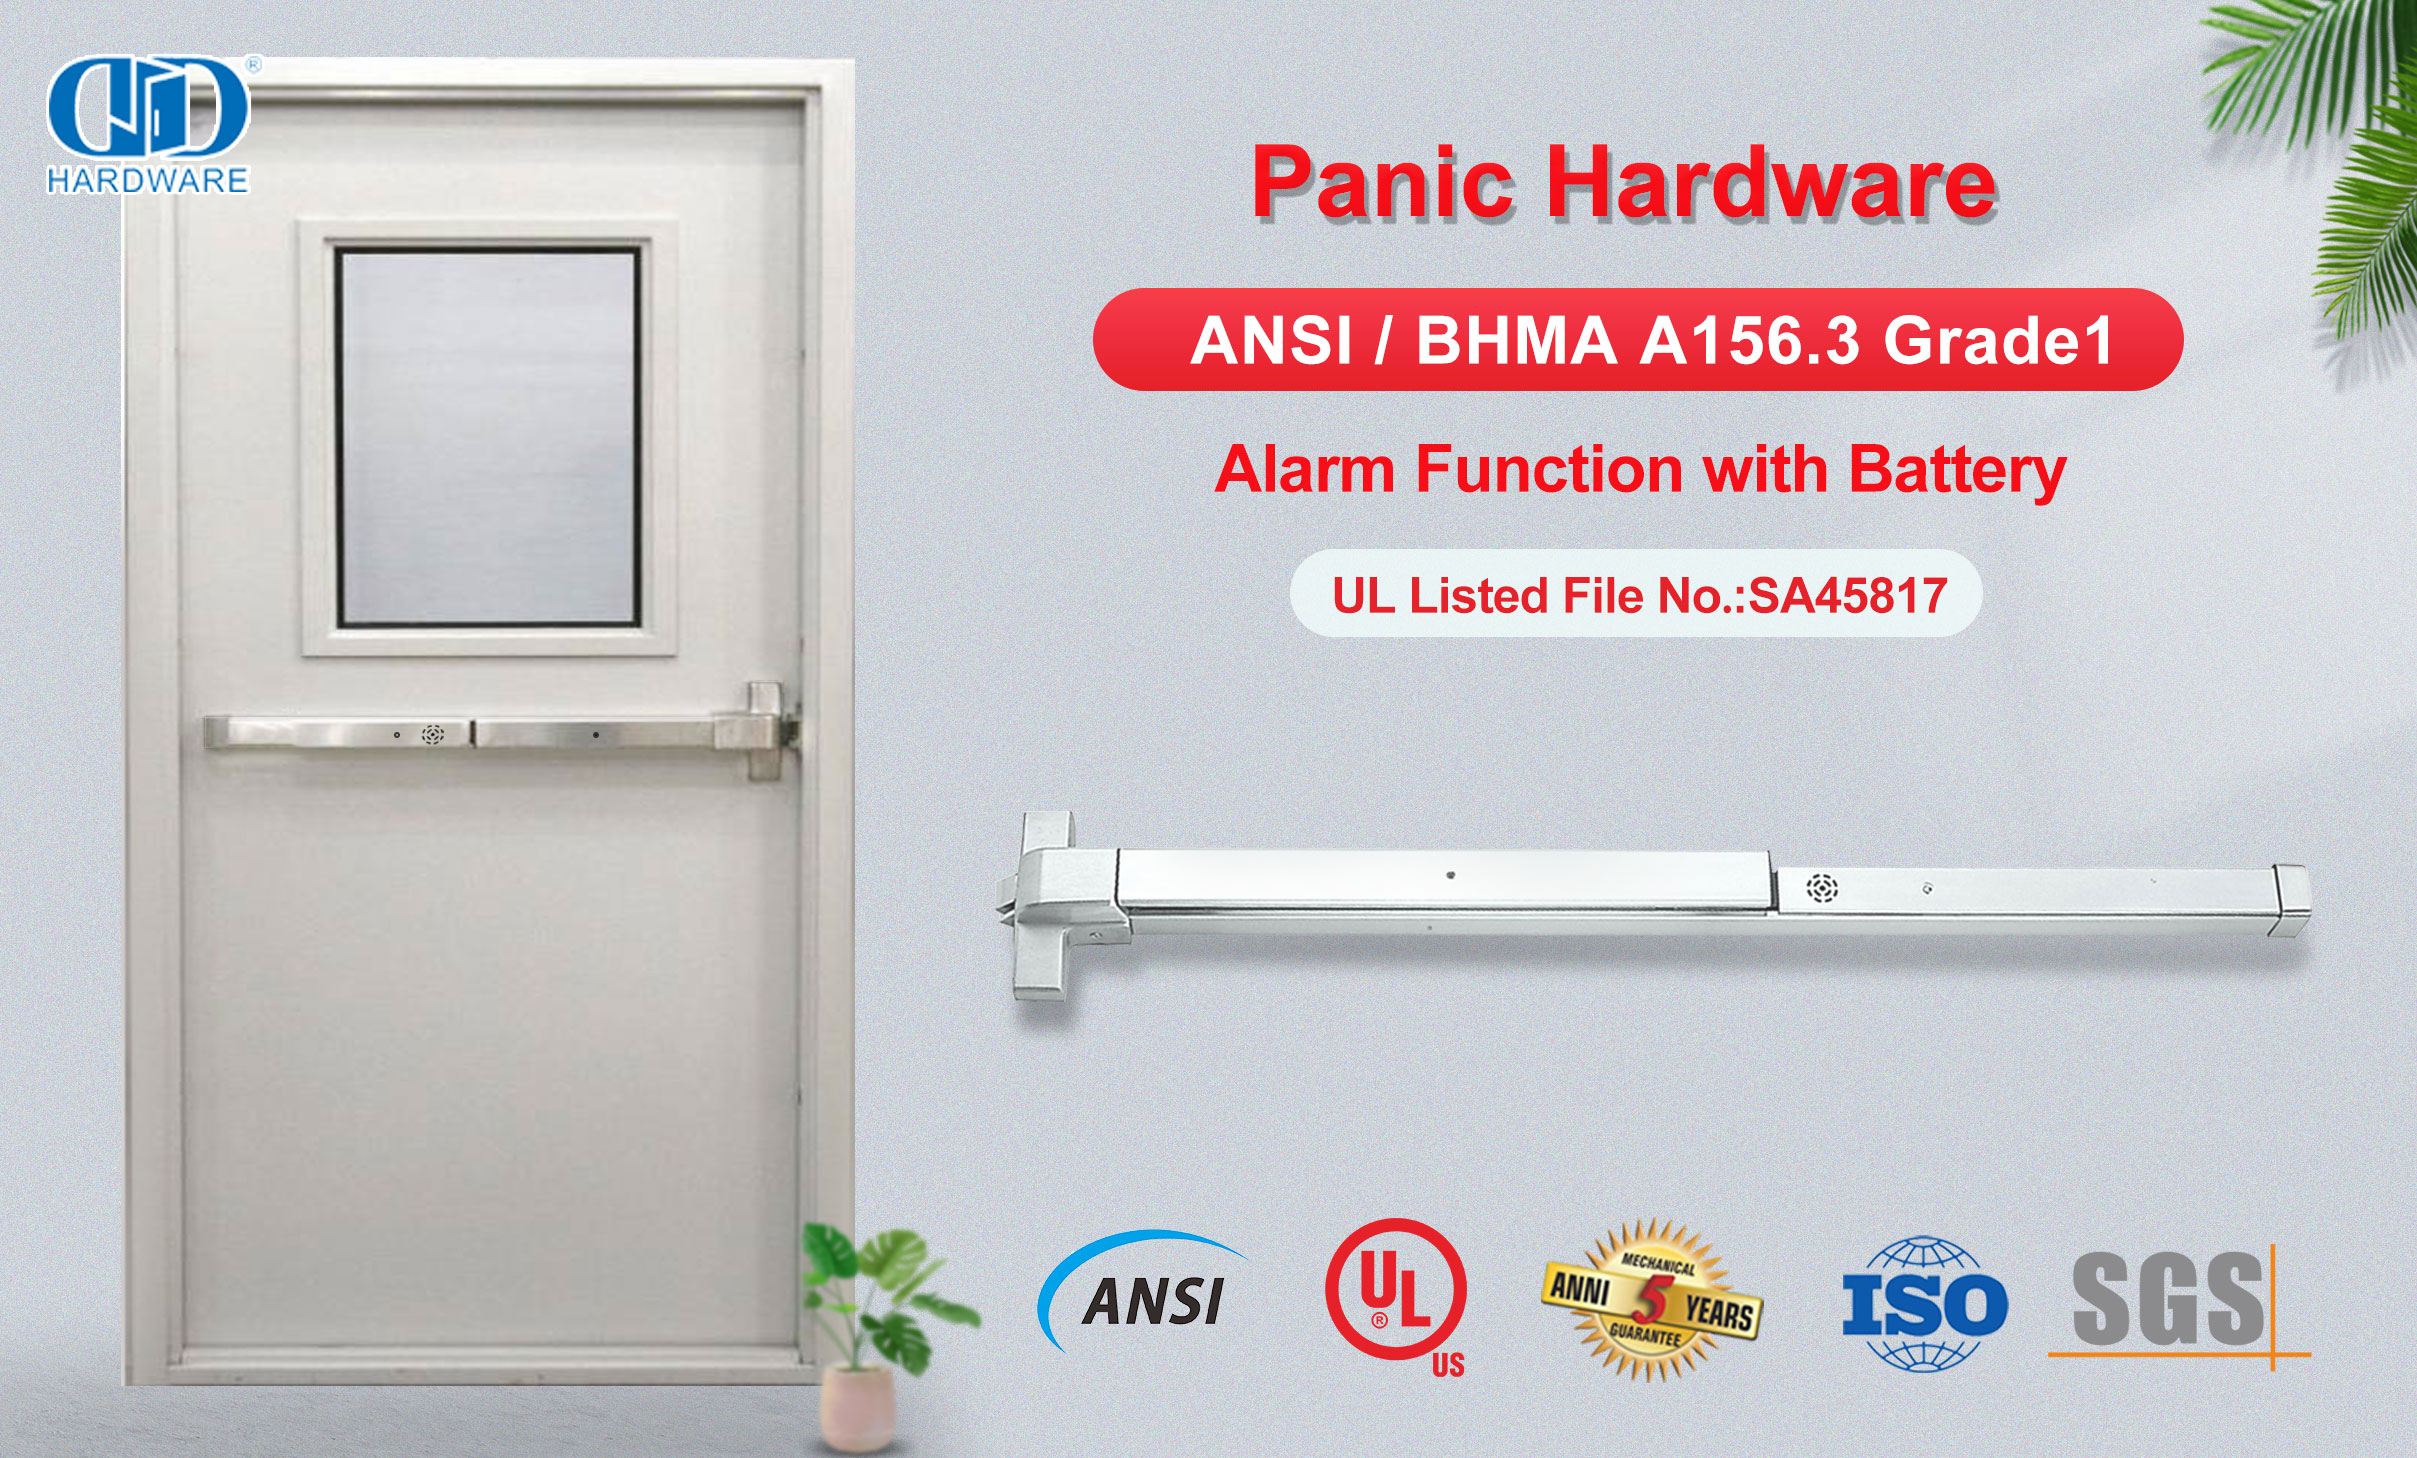 Dispositivo de hardware de pánico con función de alarma de seguridad UL305